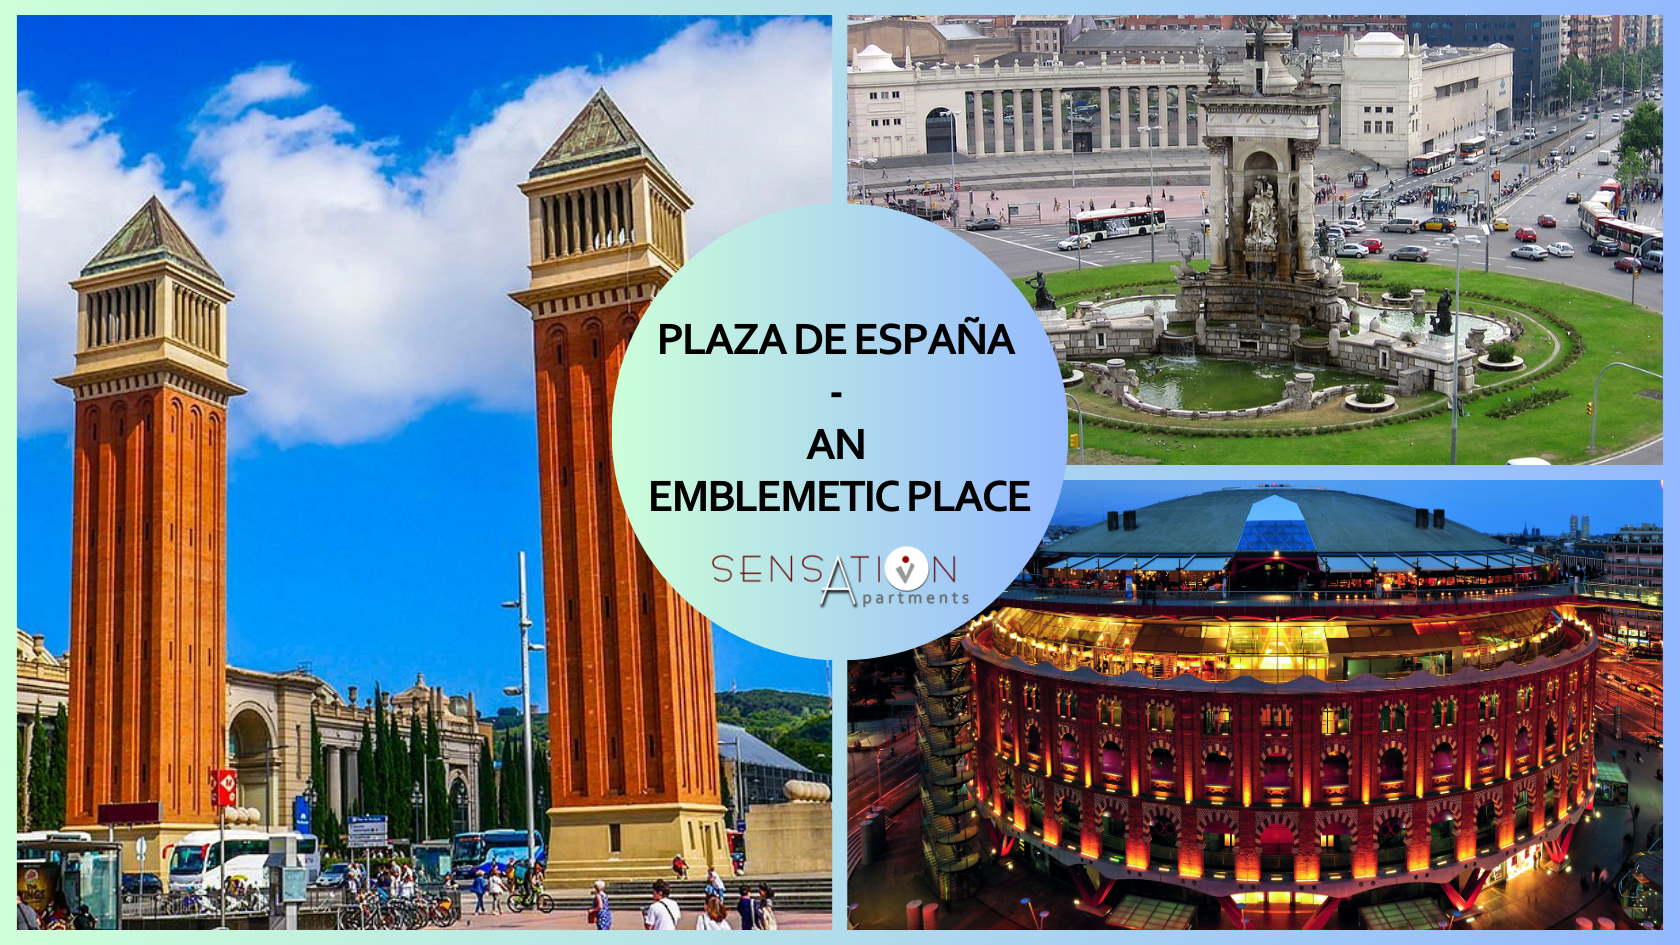 
              Plaza de España - an emblematic place